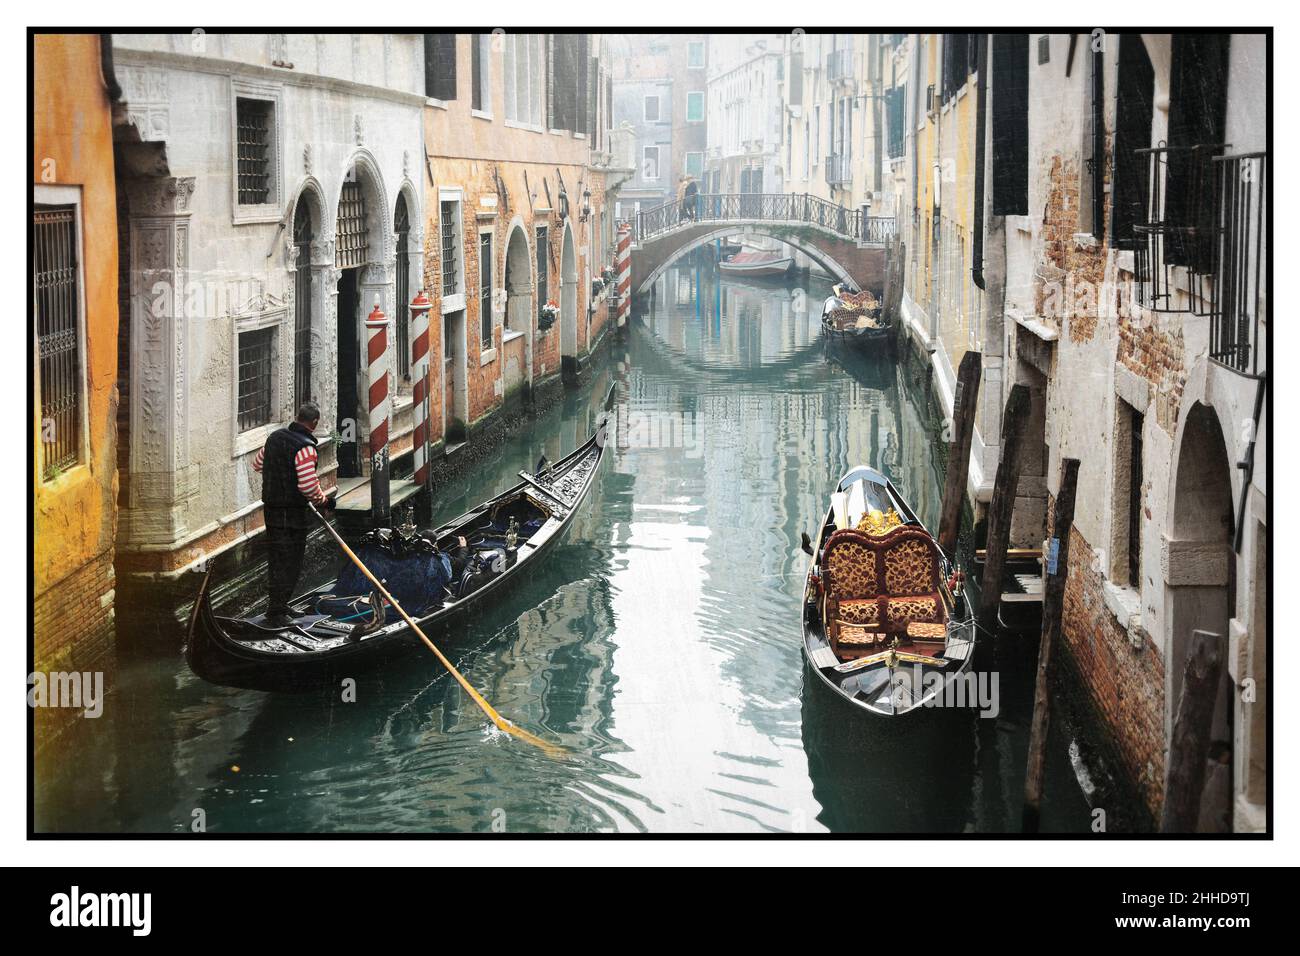 Romantische venezianische Kanäle. Alte enge Gassen von Venedig. Gondelfahrt. Retro-Stil. Italien Stockfoto